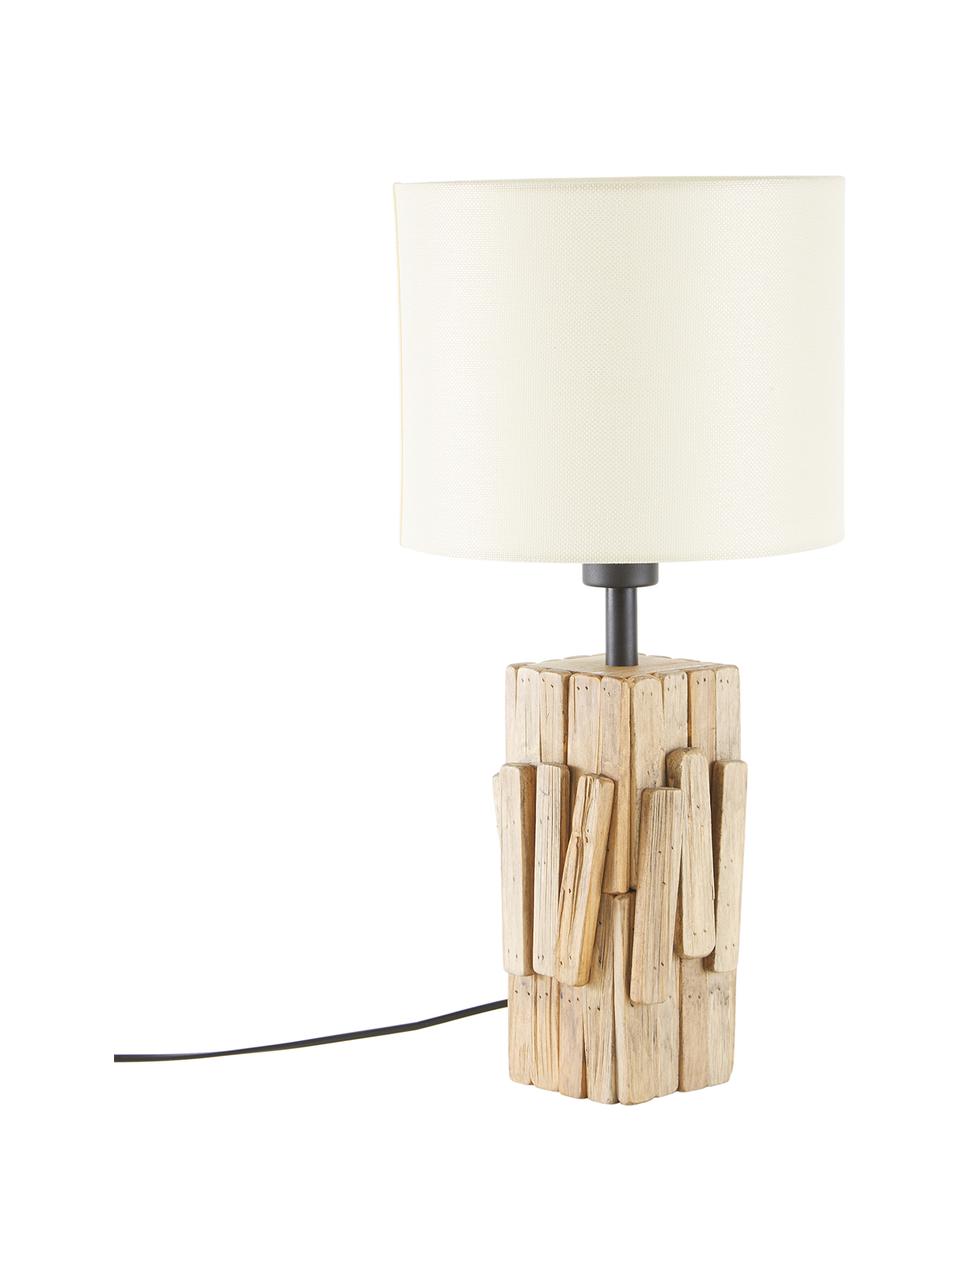 Lampada da tavolo con base in legno Portishead, Paralume: lino, Base della lampada: legno, Marrone, bianco, Ø 26 x Alt. 54 cm